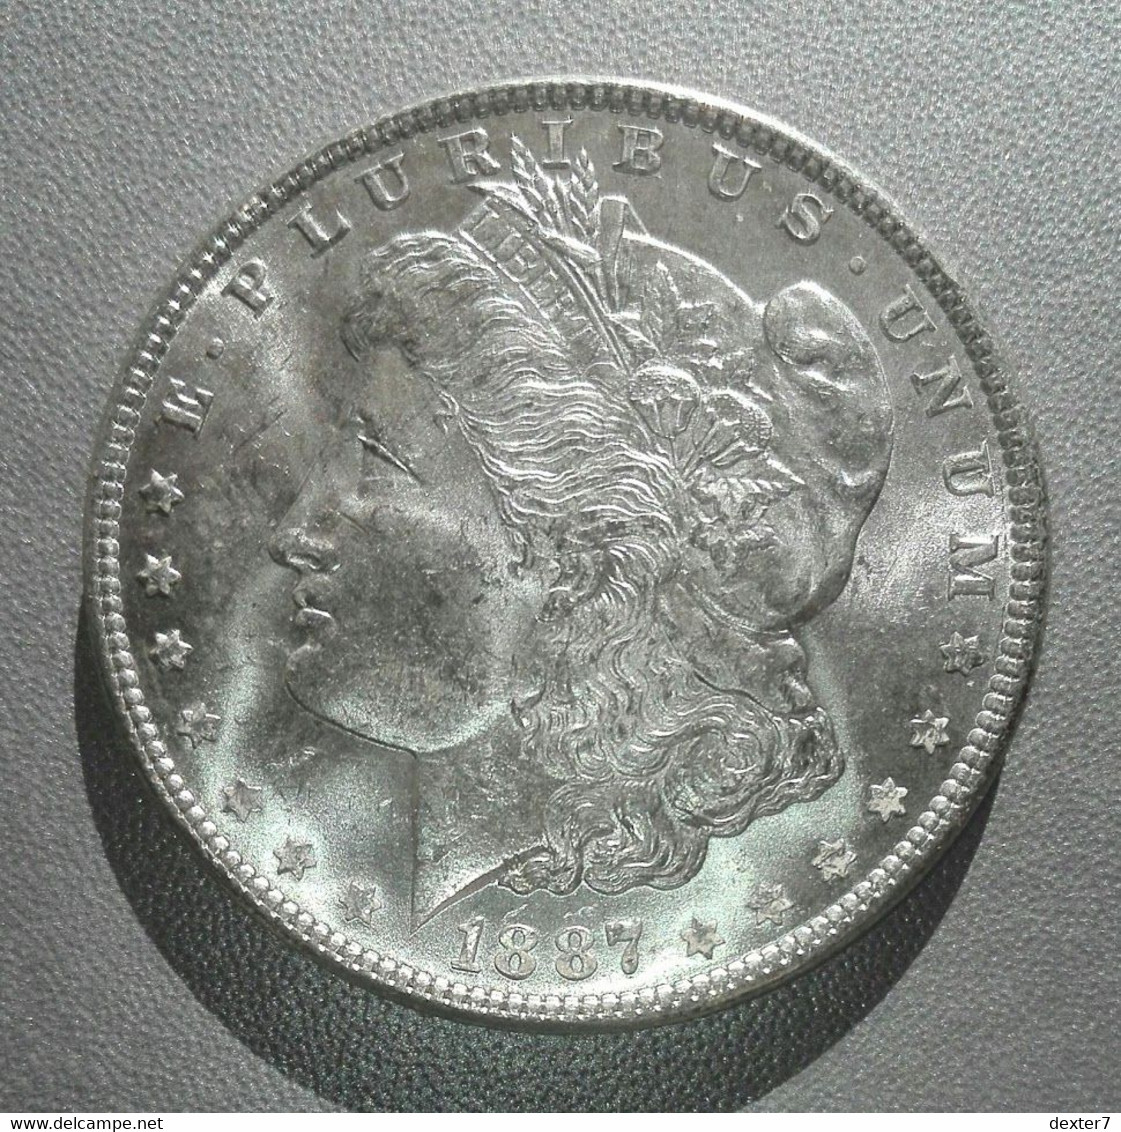 USA Stati Uniti 1 Dollaro 1887 Argento - United States Dollar Morgan [2] - 1878-1921: Morgan